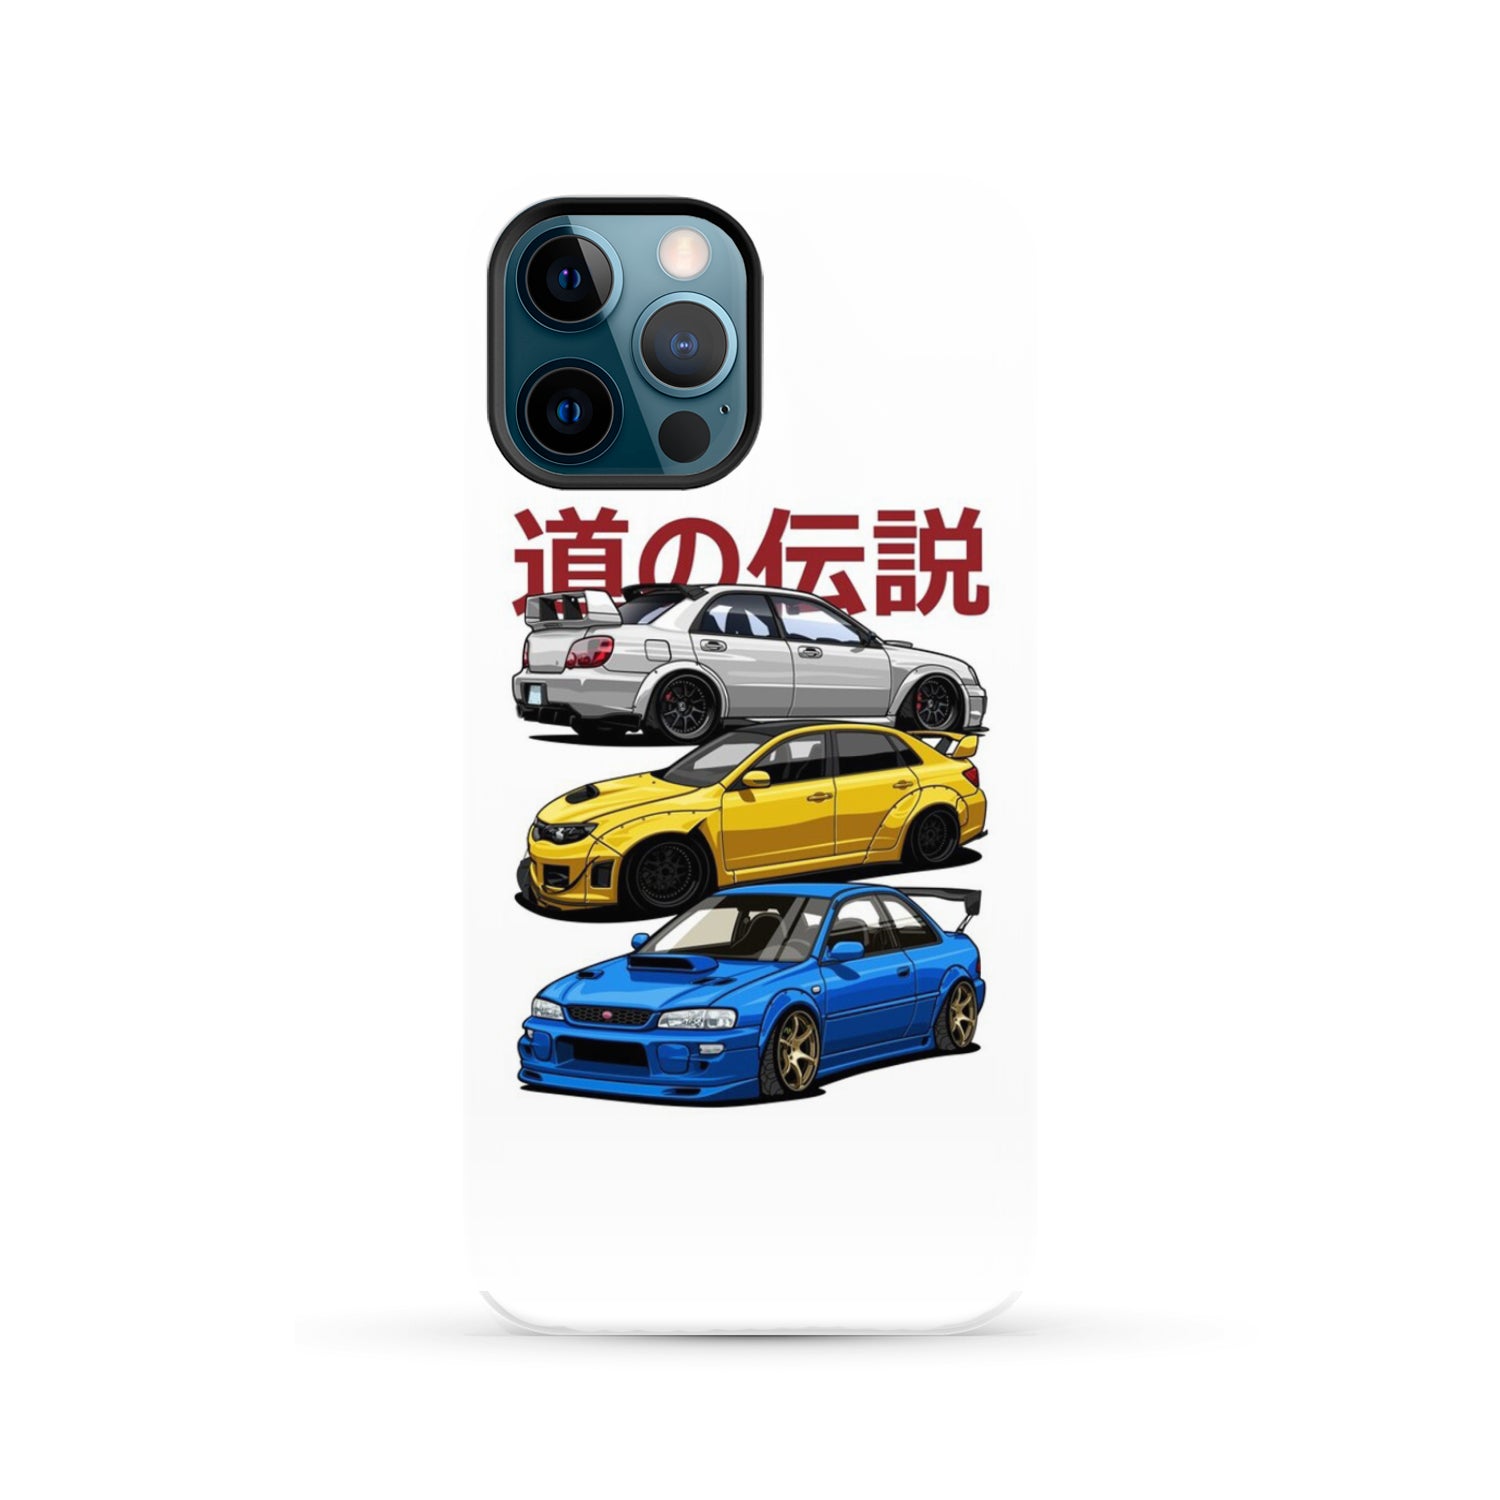 Subaru Legends Phone Case